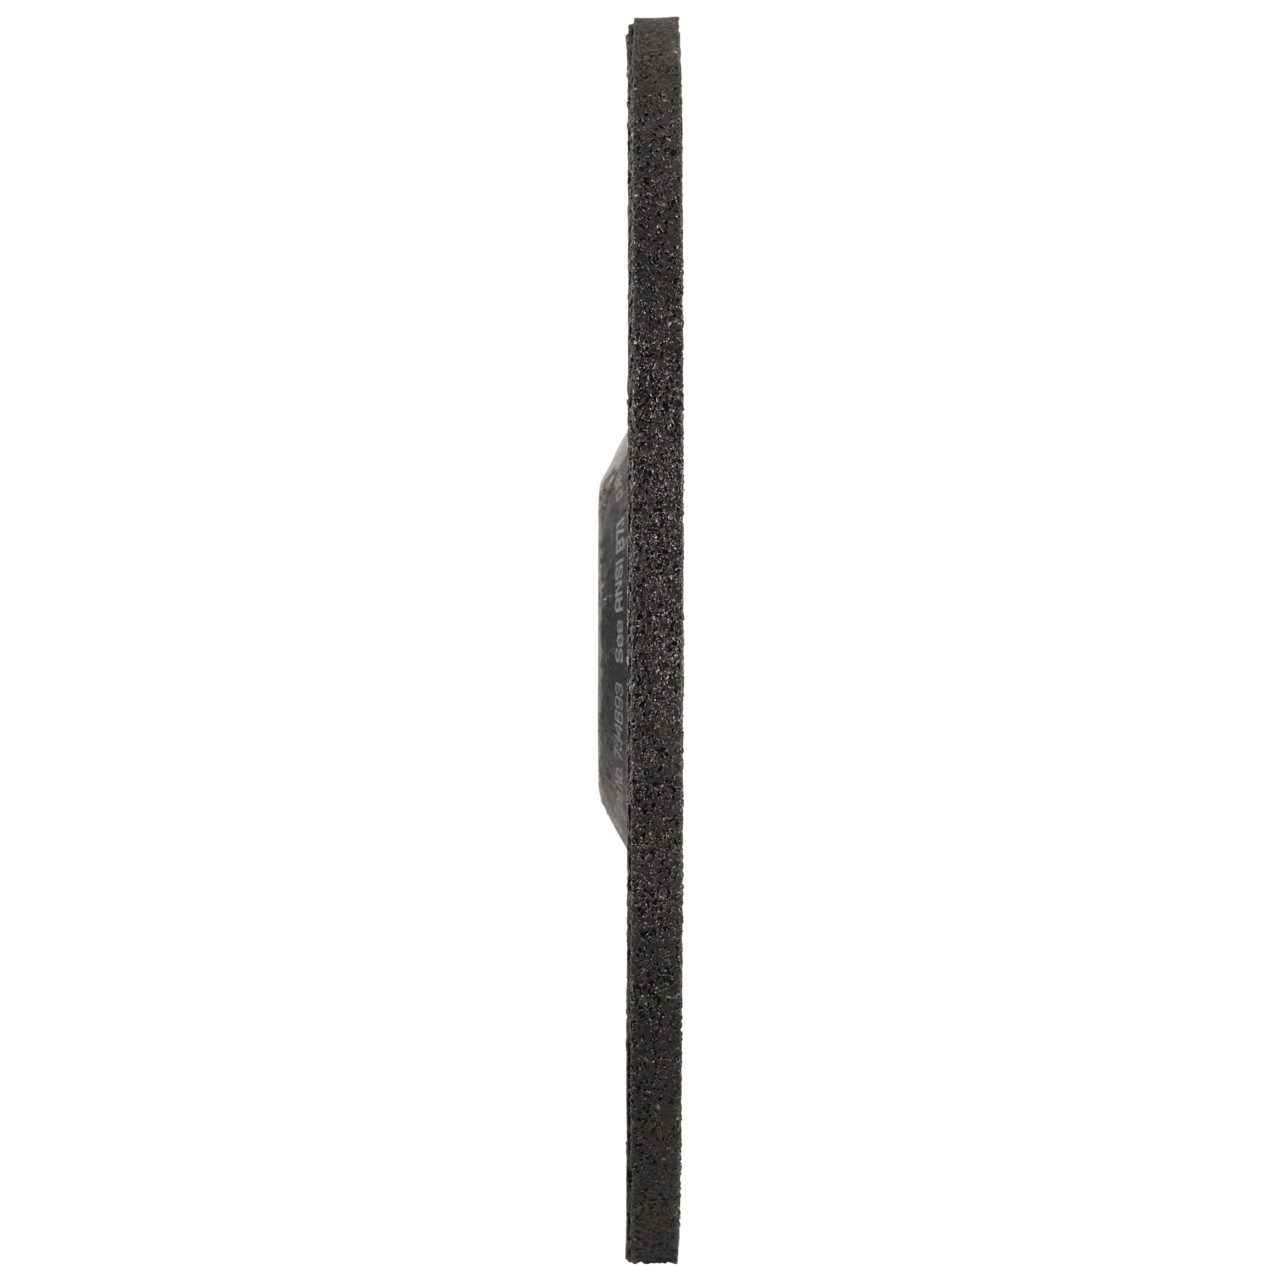 TYROLIT Schruppscheibe DxUxH 150x6x22,23 FASTCUT Basic für Stahl und Edelstahl, Form: 27C - gekröpfte Ausführung, Art. 34468718